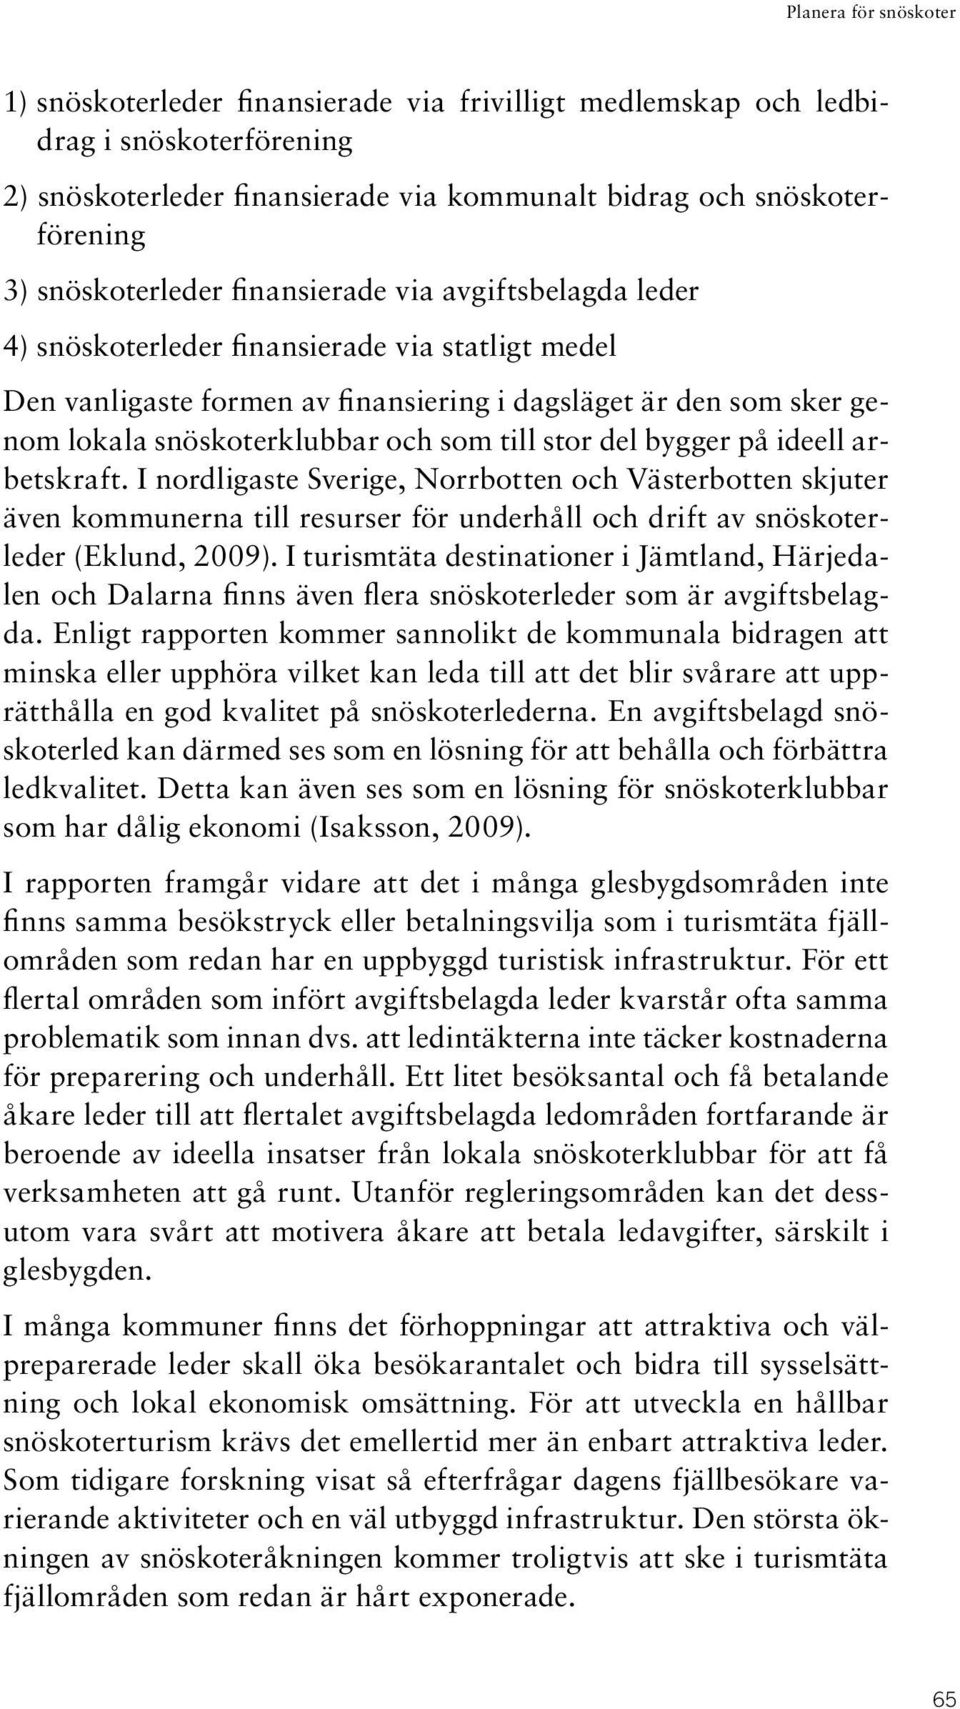 ideell arbetskraft. I nordligaste Sverige, Norrbotten och Västerbotten skjuter även kommunerna till resurser för underhåll och drift av snöskoterleder (Eklund, 2009).